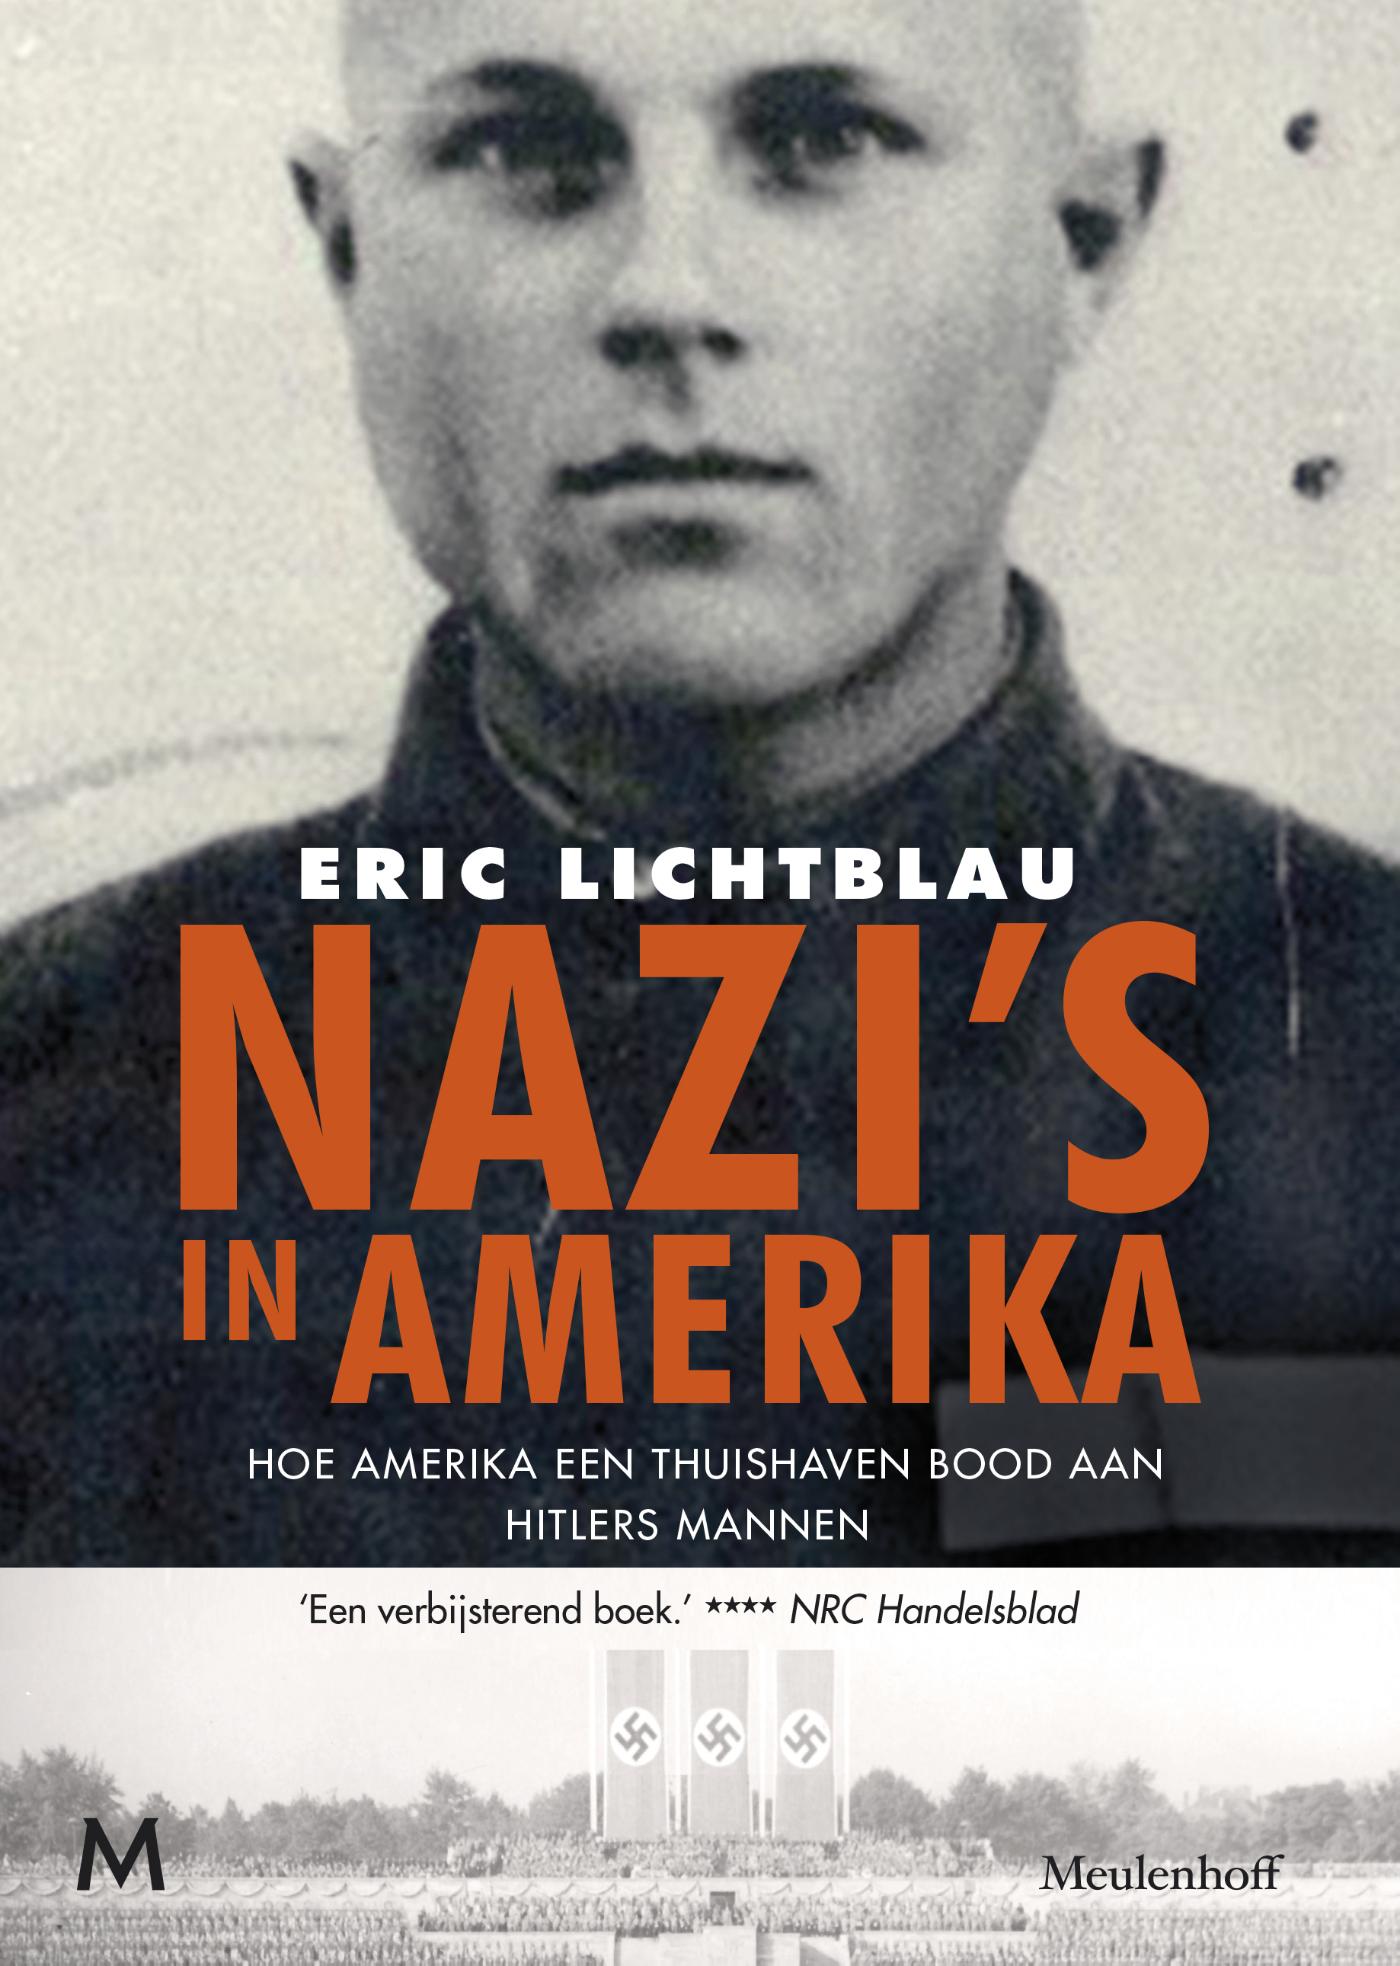 Nazi's in Amerika (Ebook)